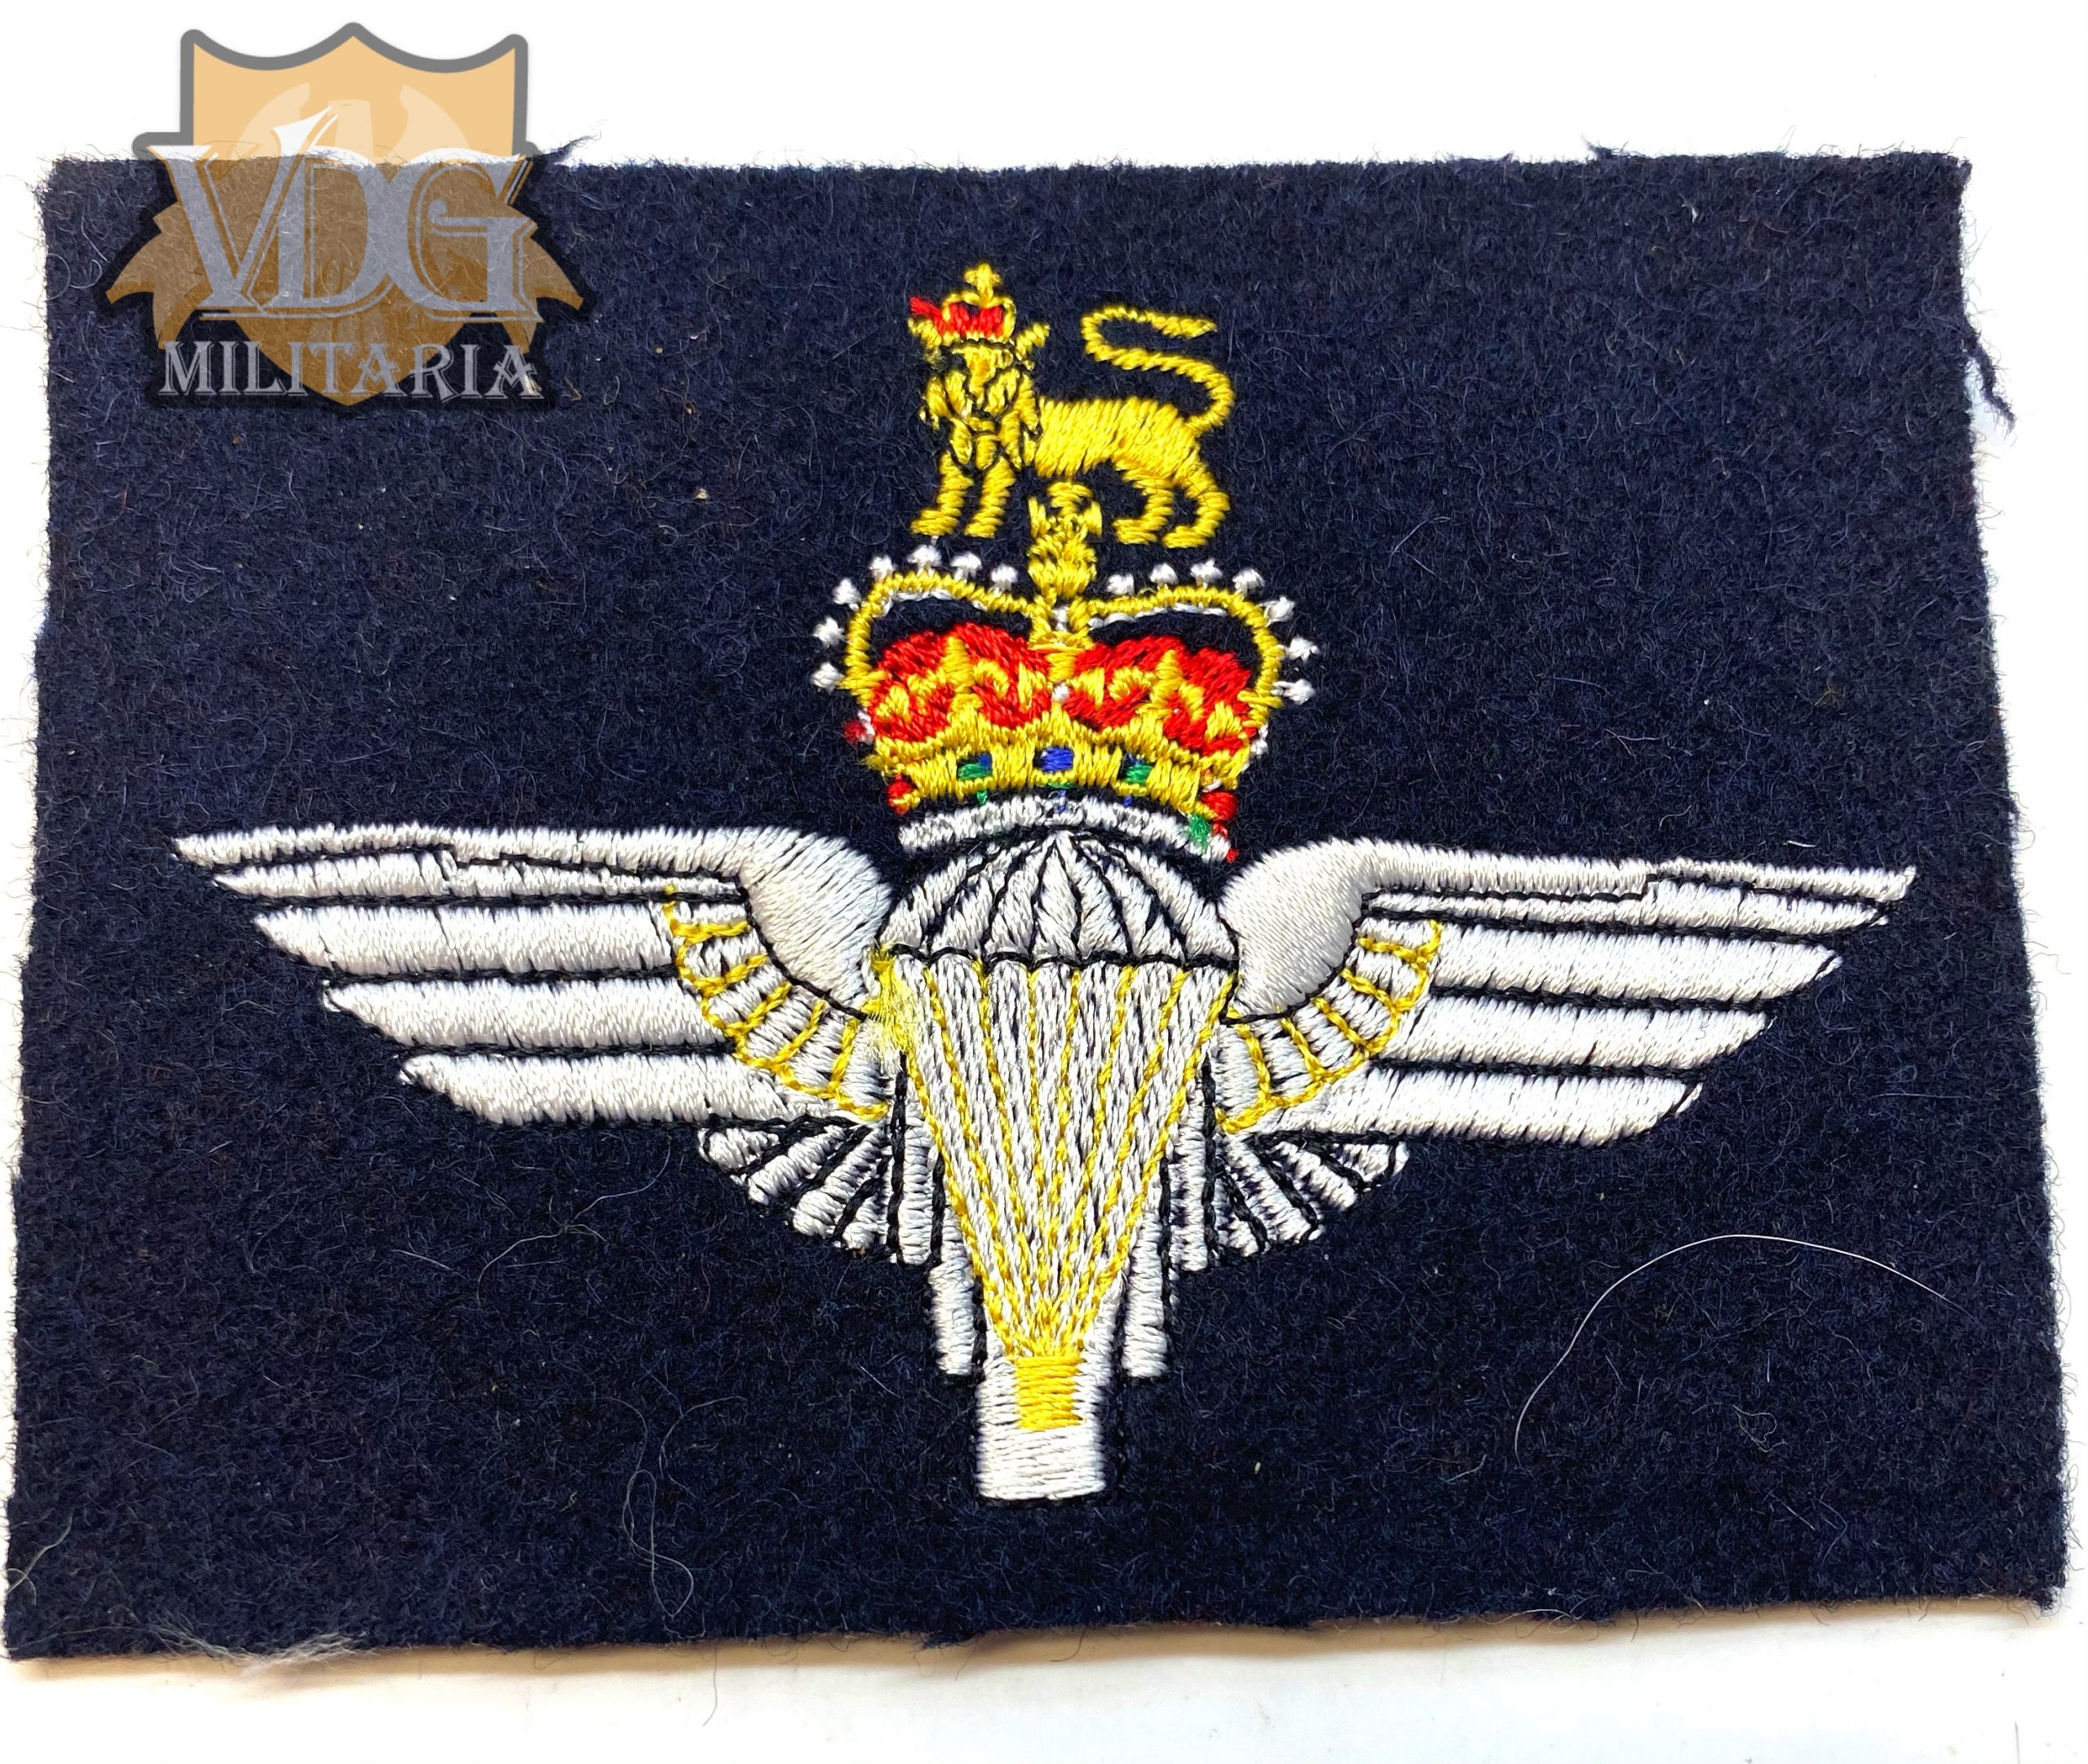 Post WW2 British Paratrooper Airborne Patch | VDG Militaria